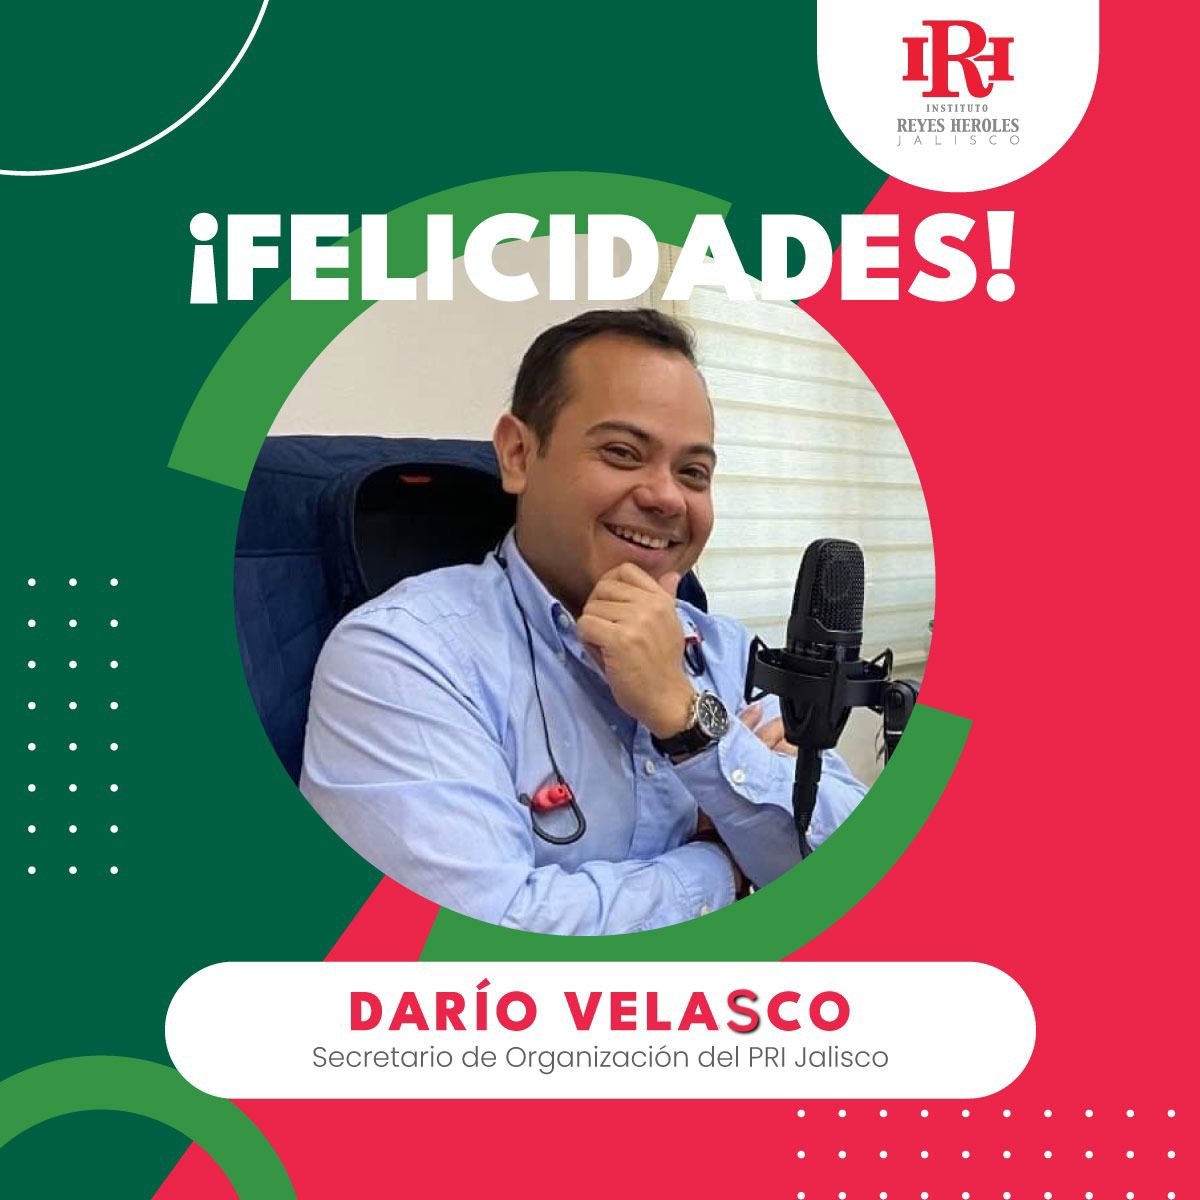 ¡El equipo de #IRHJalisco envía una gran felicitación con motivo de su cumpleaños a Darío Velasco, Secretario de Organización del PRI Jalisco!

#EnHorabuena 🥳🎊🎉👏